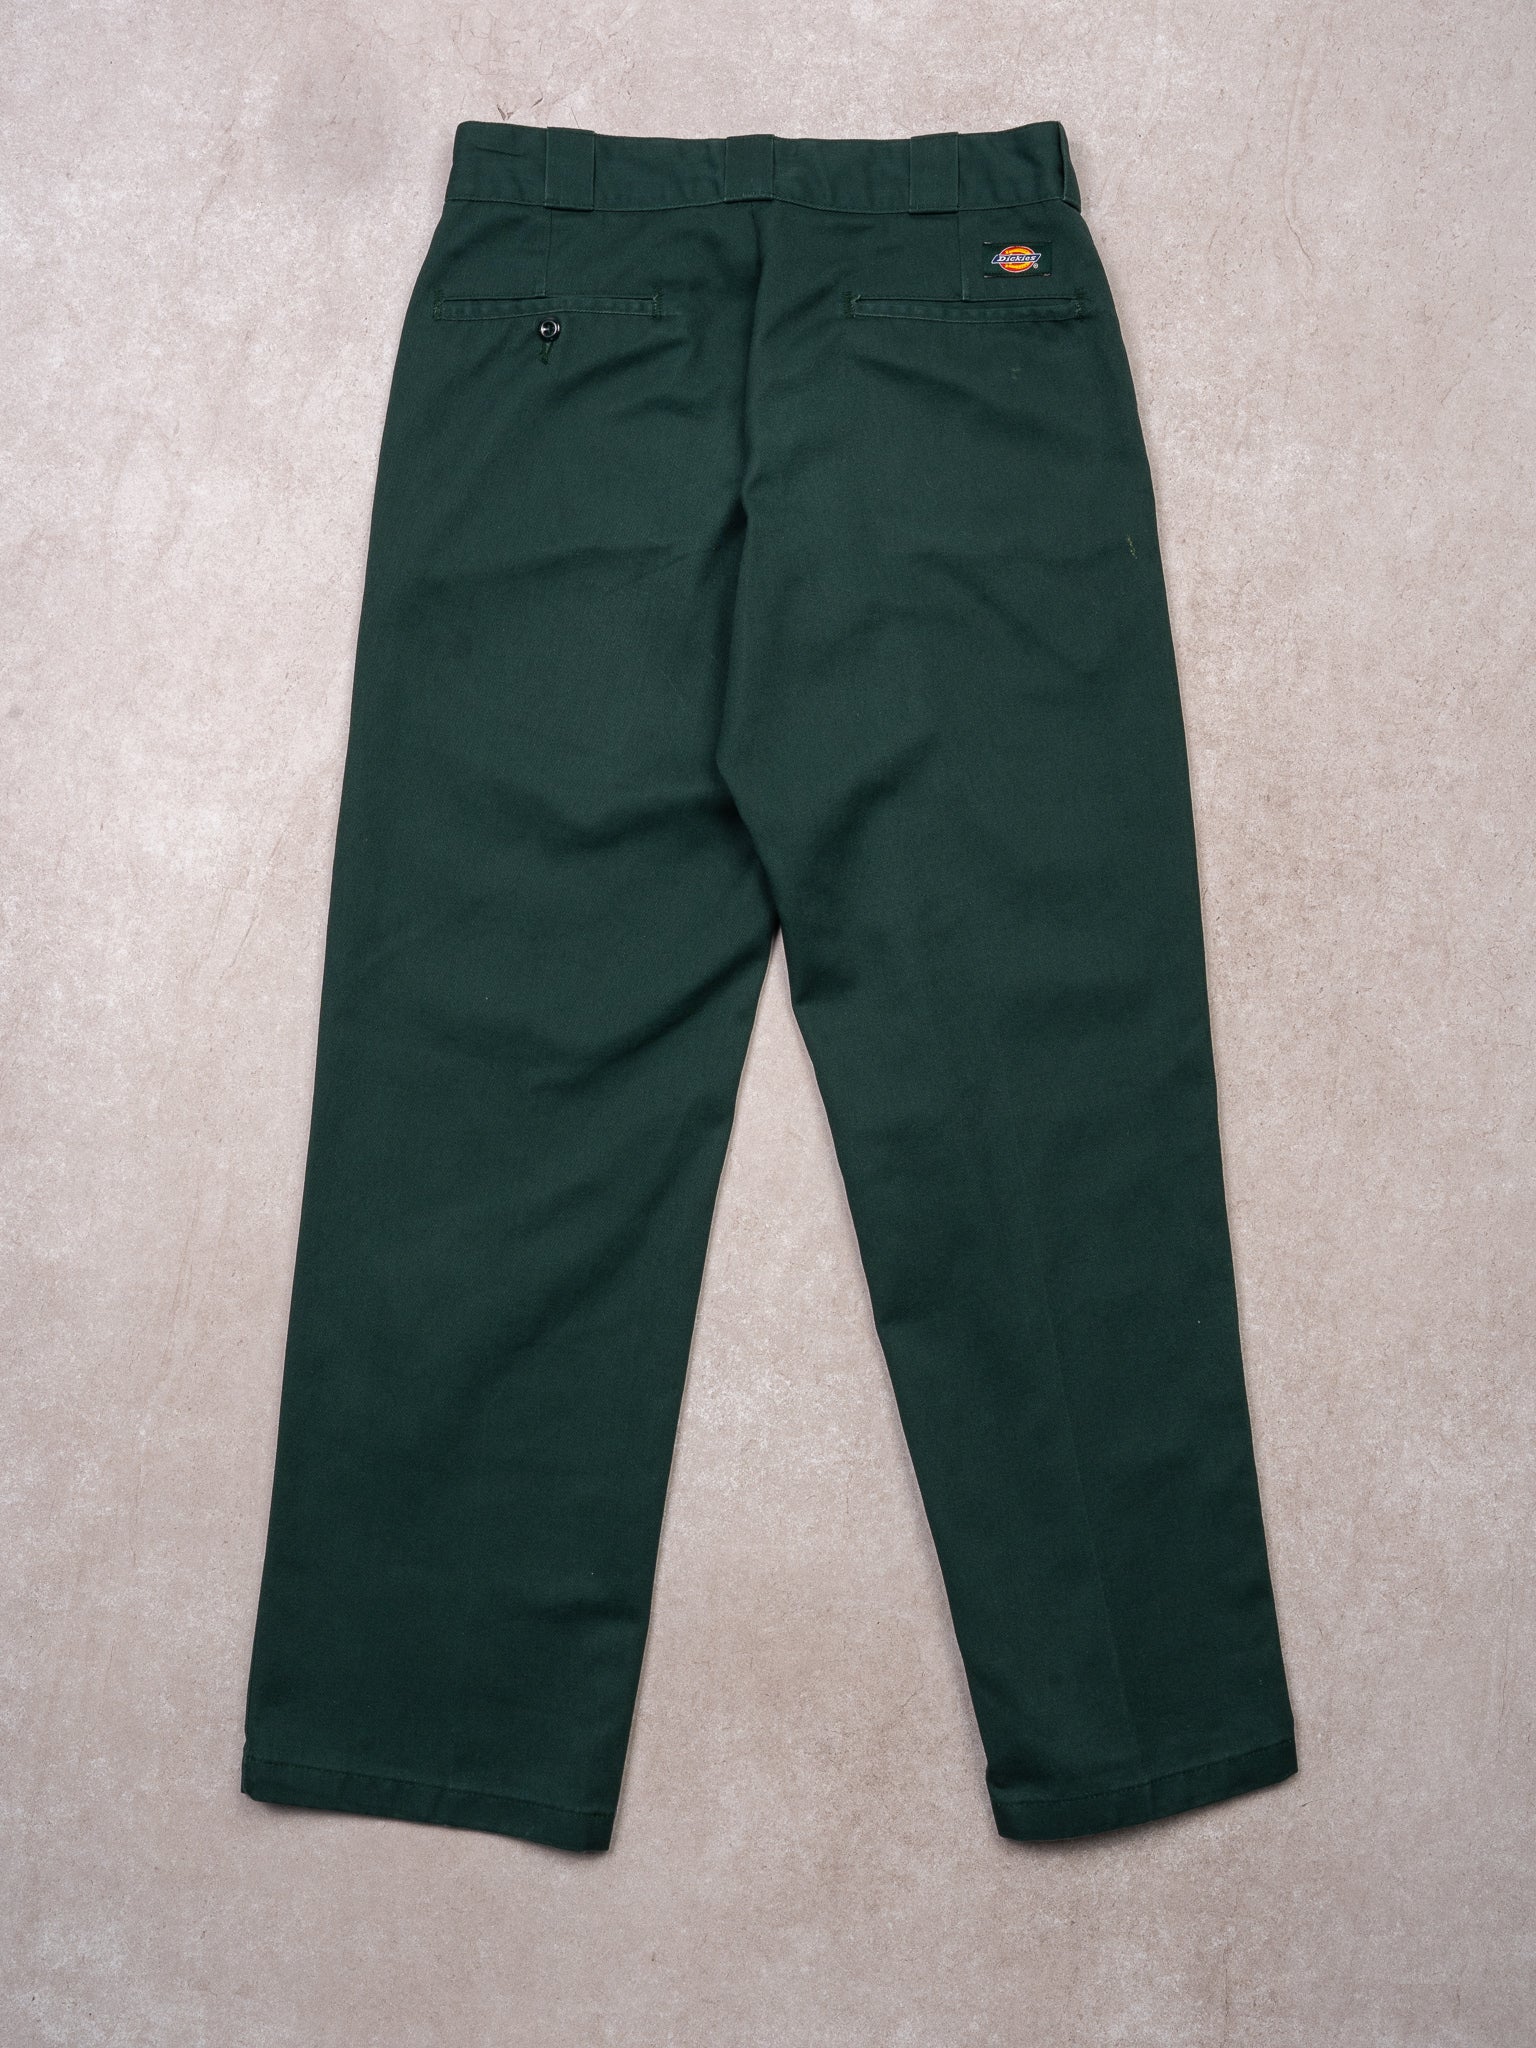 VIntage Green Dickies 874 Original Fit Pants (30 x 30)